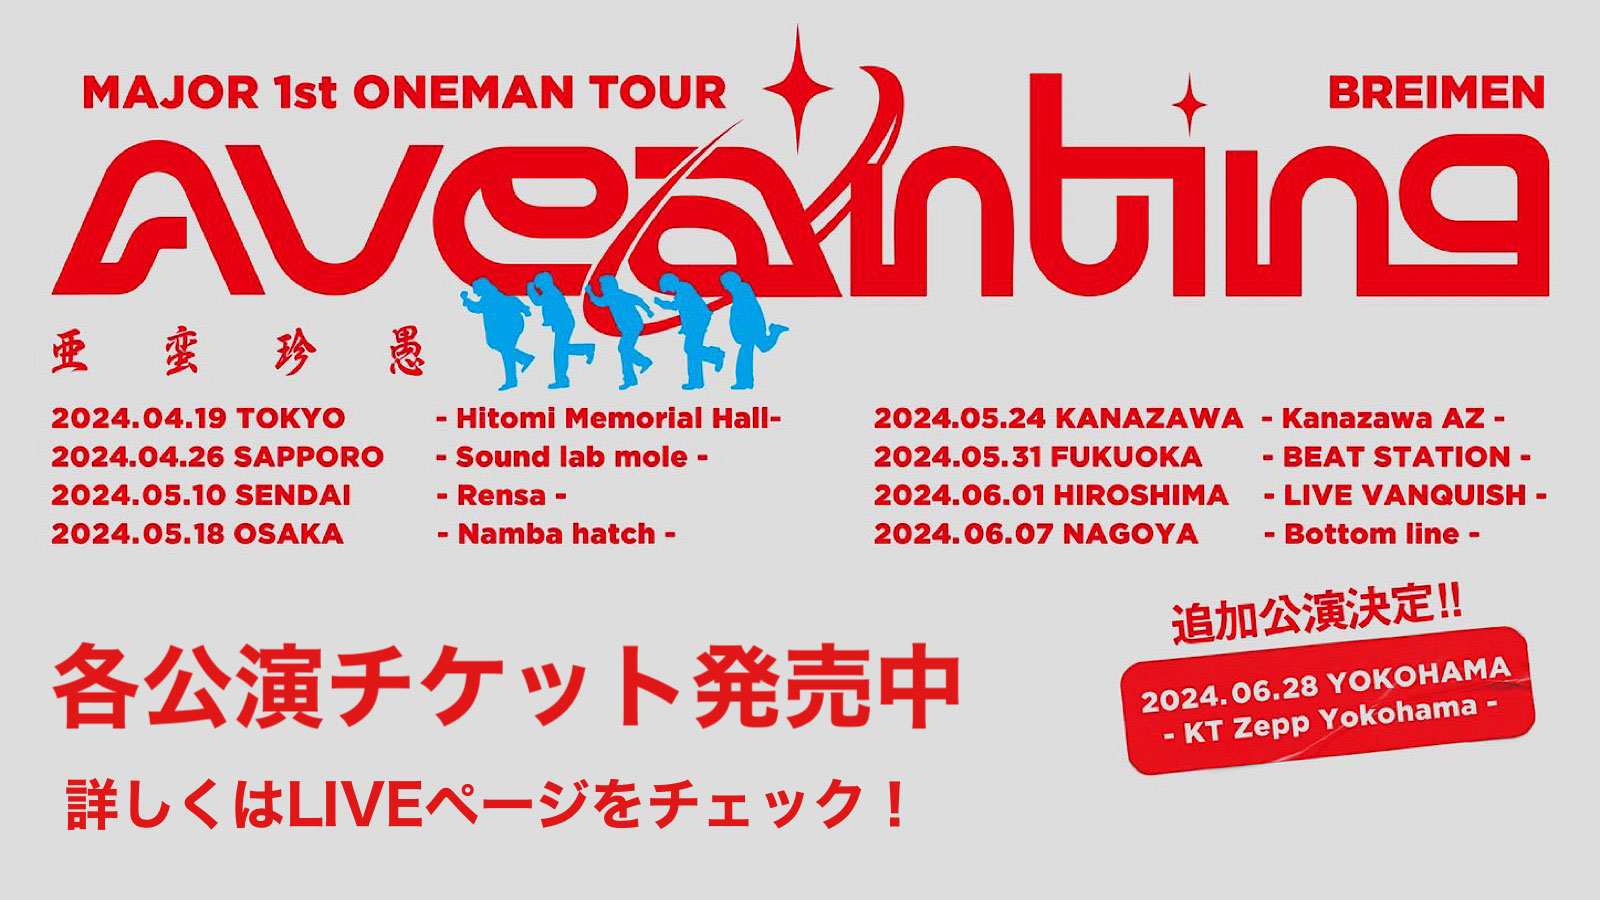 BREIMEN MAJOR 1st ONEMAN TOUR「AVEANTING」